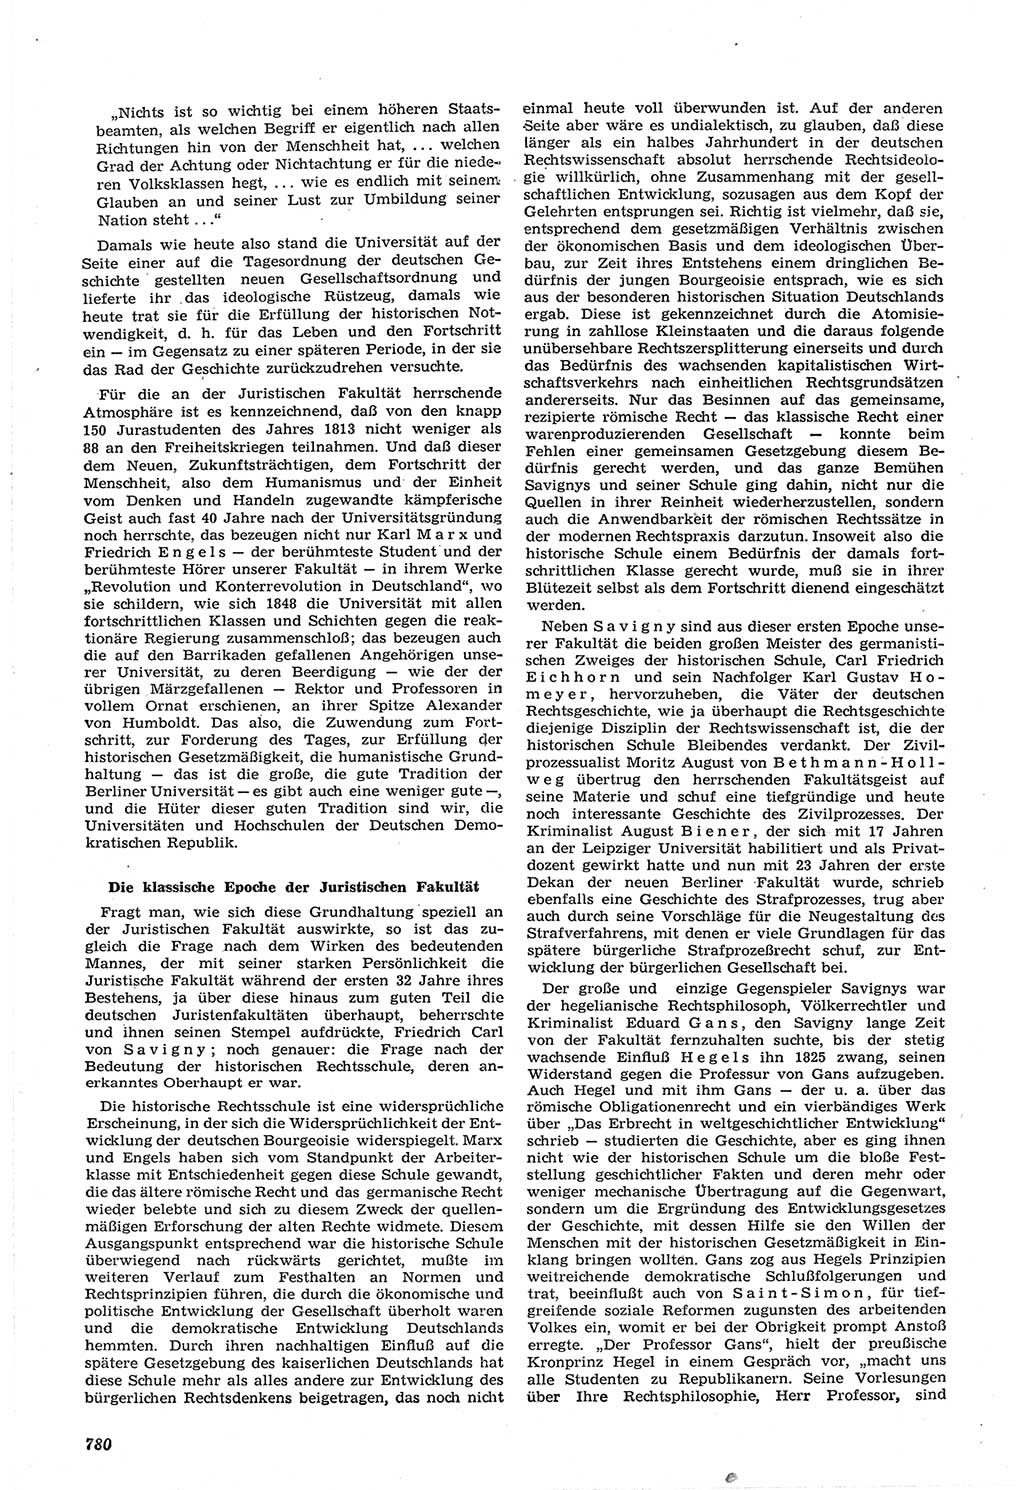 Neue Justiz (NJ), Zeitschrift für Recht und Rechtswissenschaft [Deutsche Demokratische Republik (DDR)], 14. Jahrgang 1960, Seite 780 (NJ DDR 1960, S. 780)